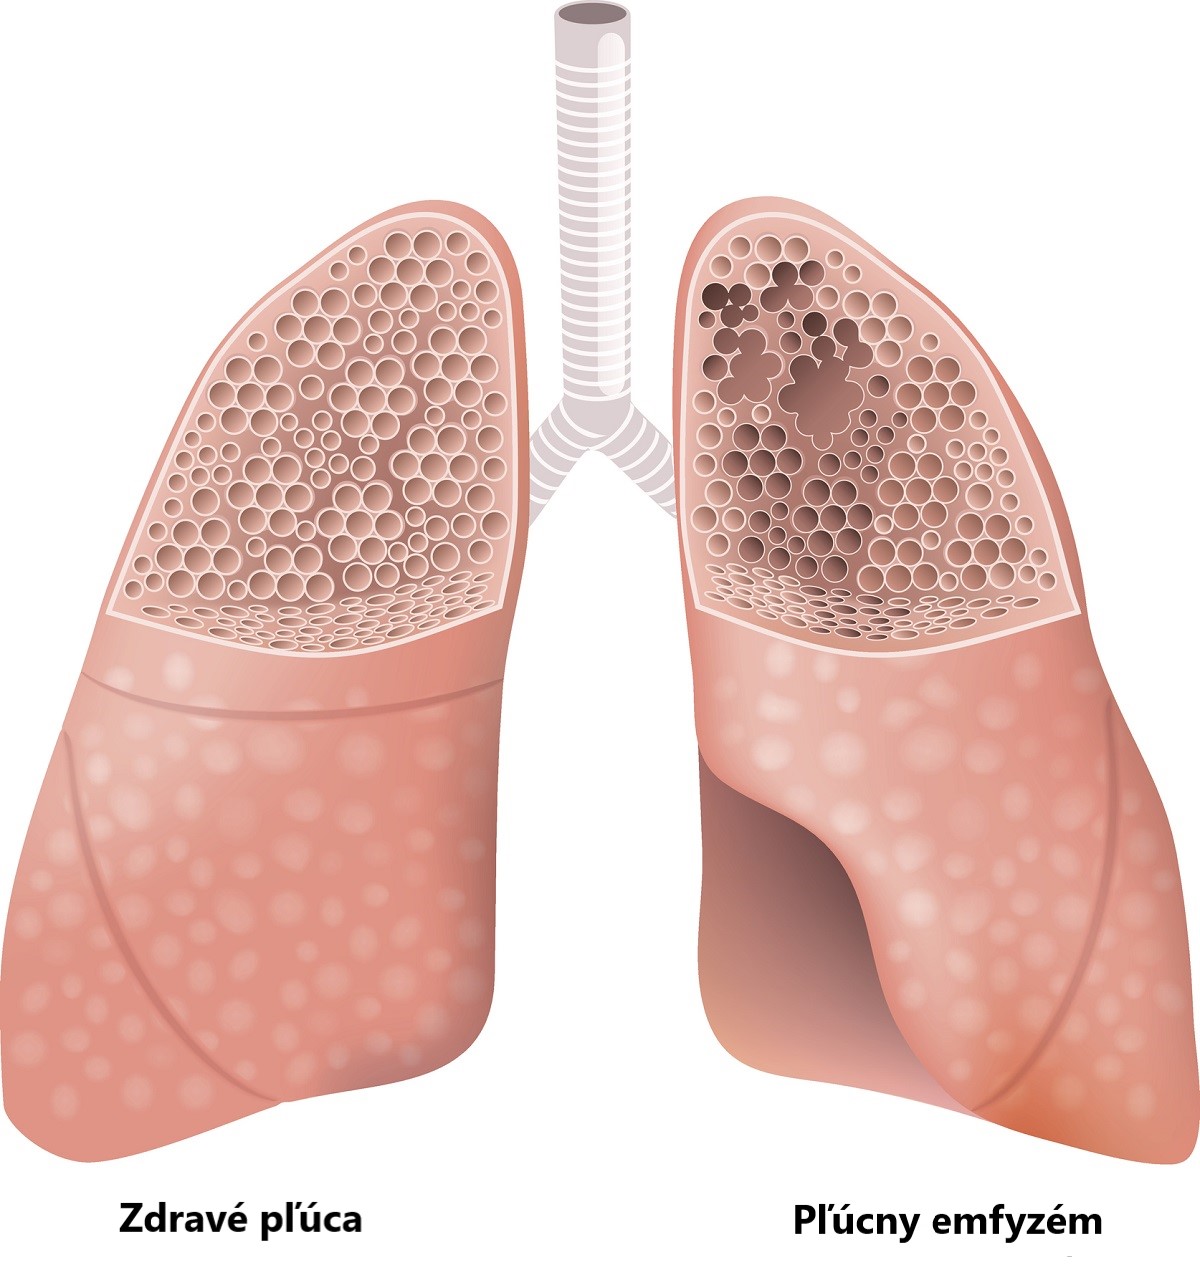 Znázornenie zdravých pľúc v porovnaní s pľúcnym emfyzémom. Zdroj foto: Getty Images